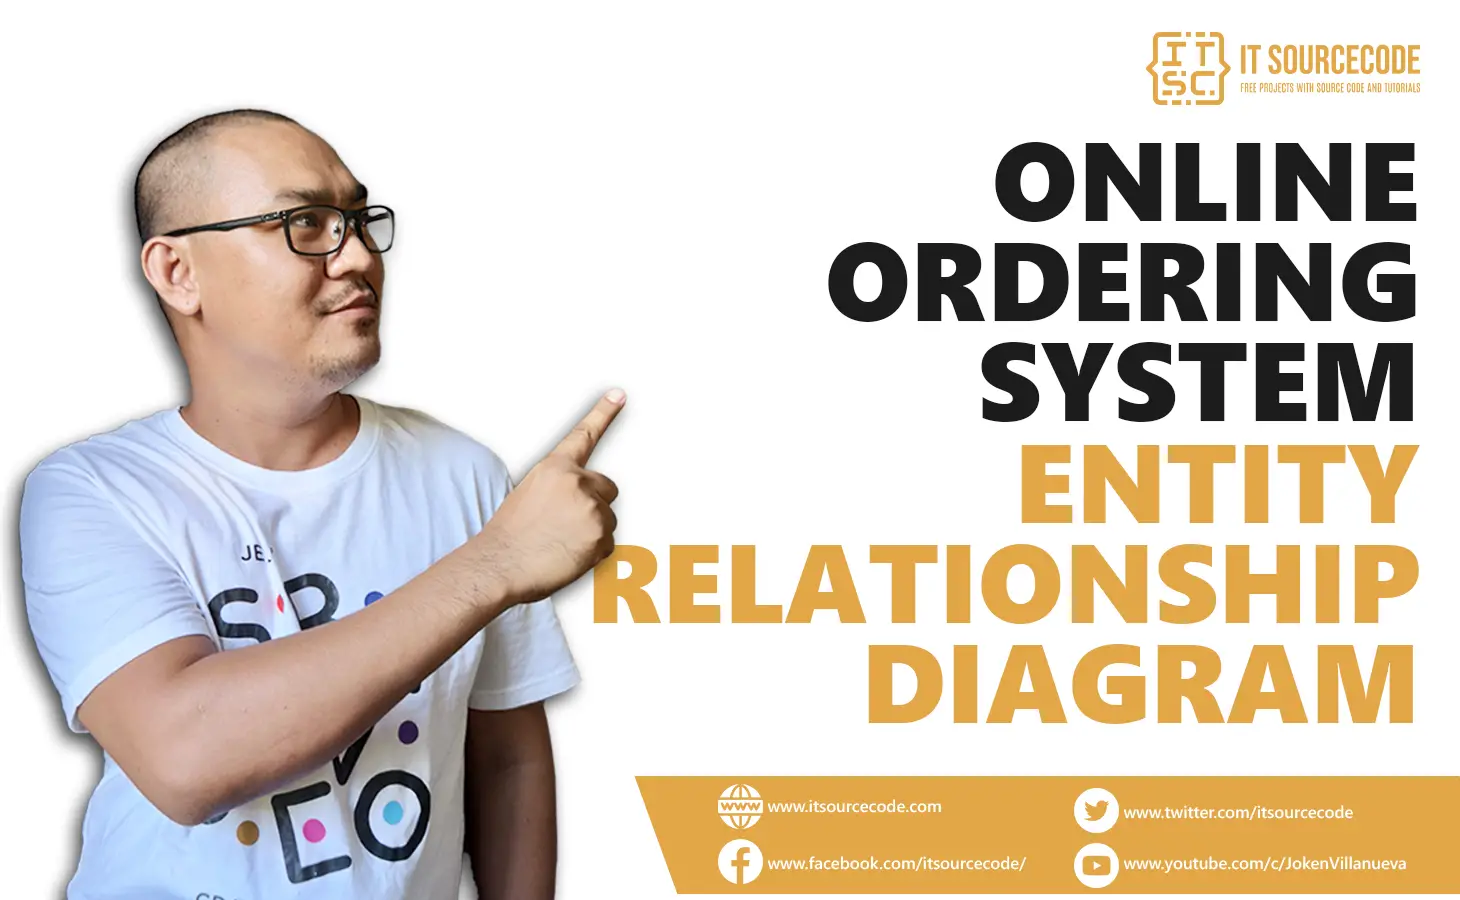 Online Ordering System ER Diagram